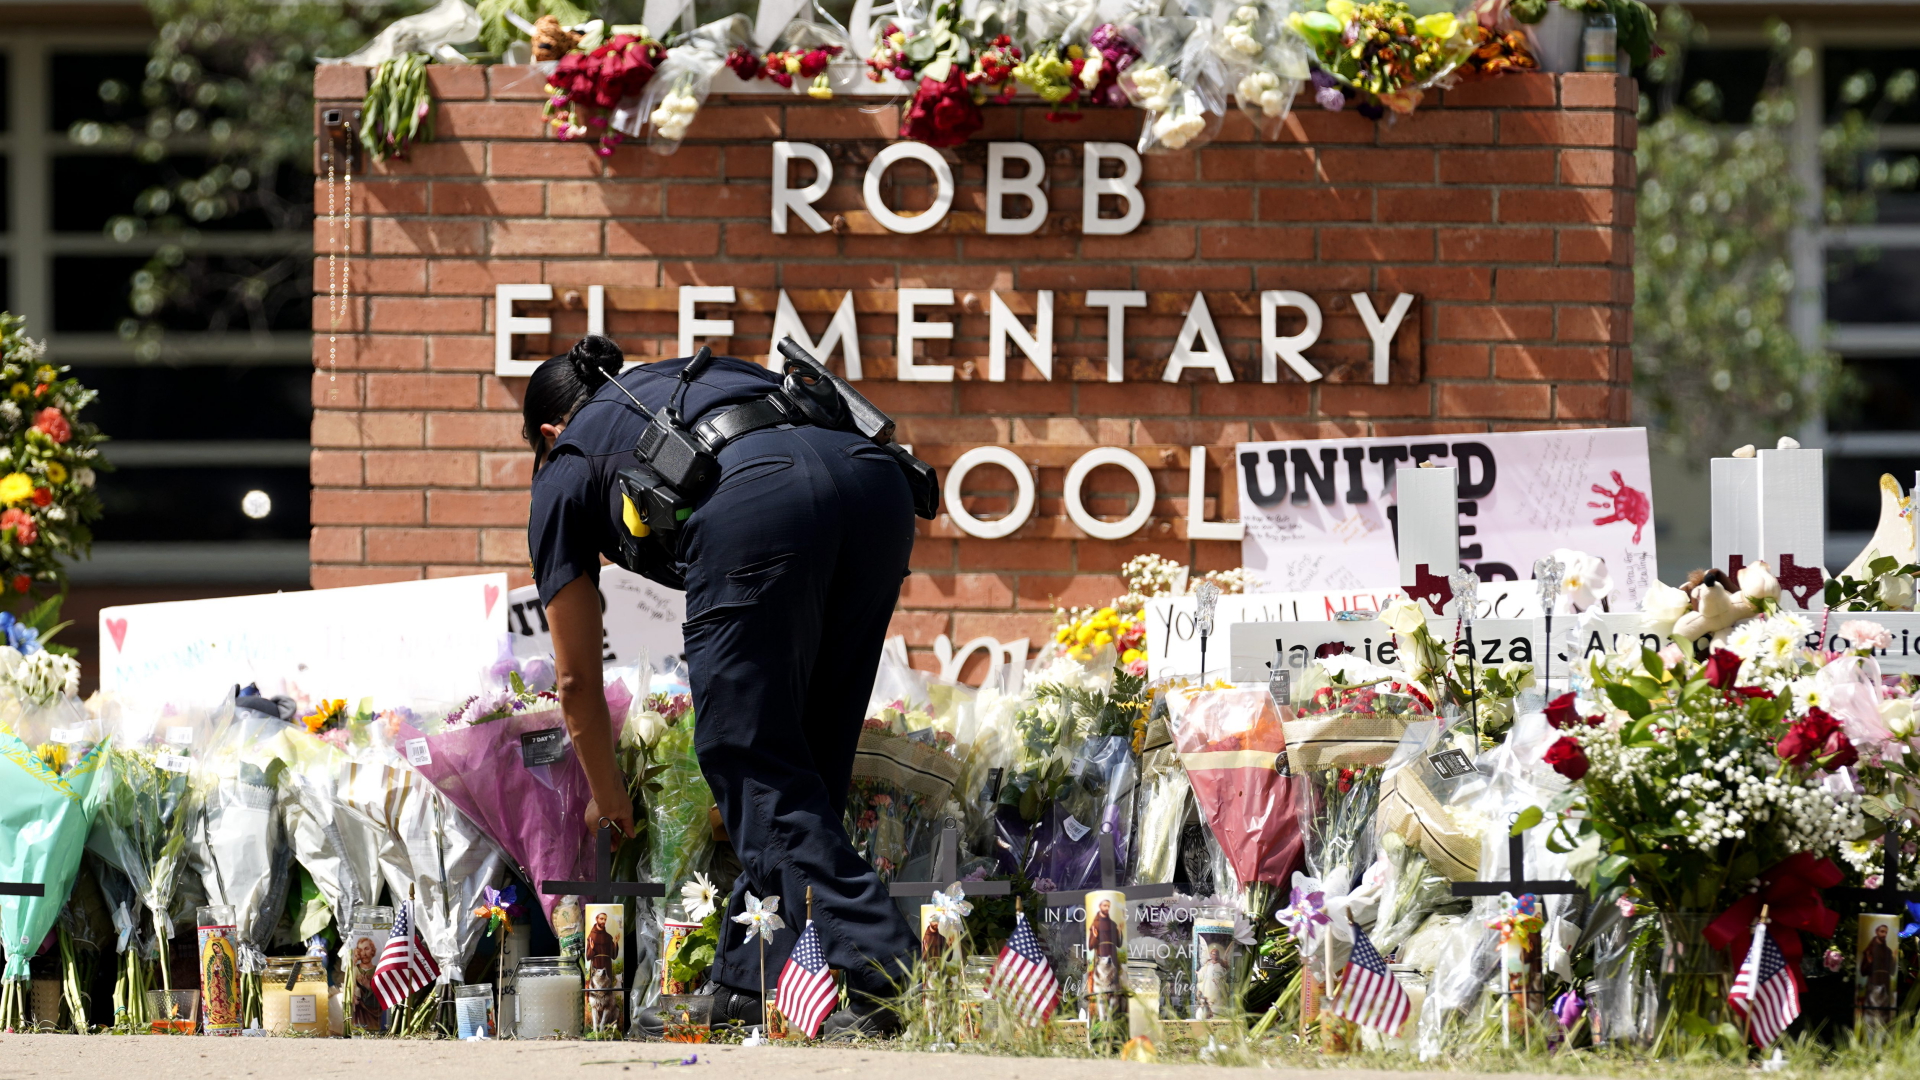 Eine Polizistin legt Blumen vor der Robb Elementary School nieder.